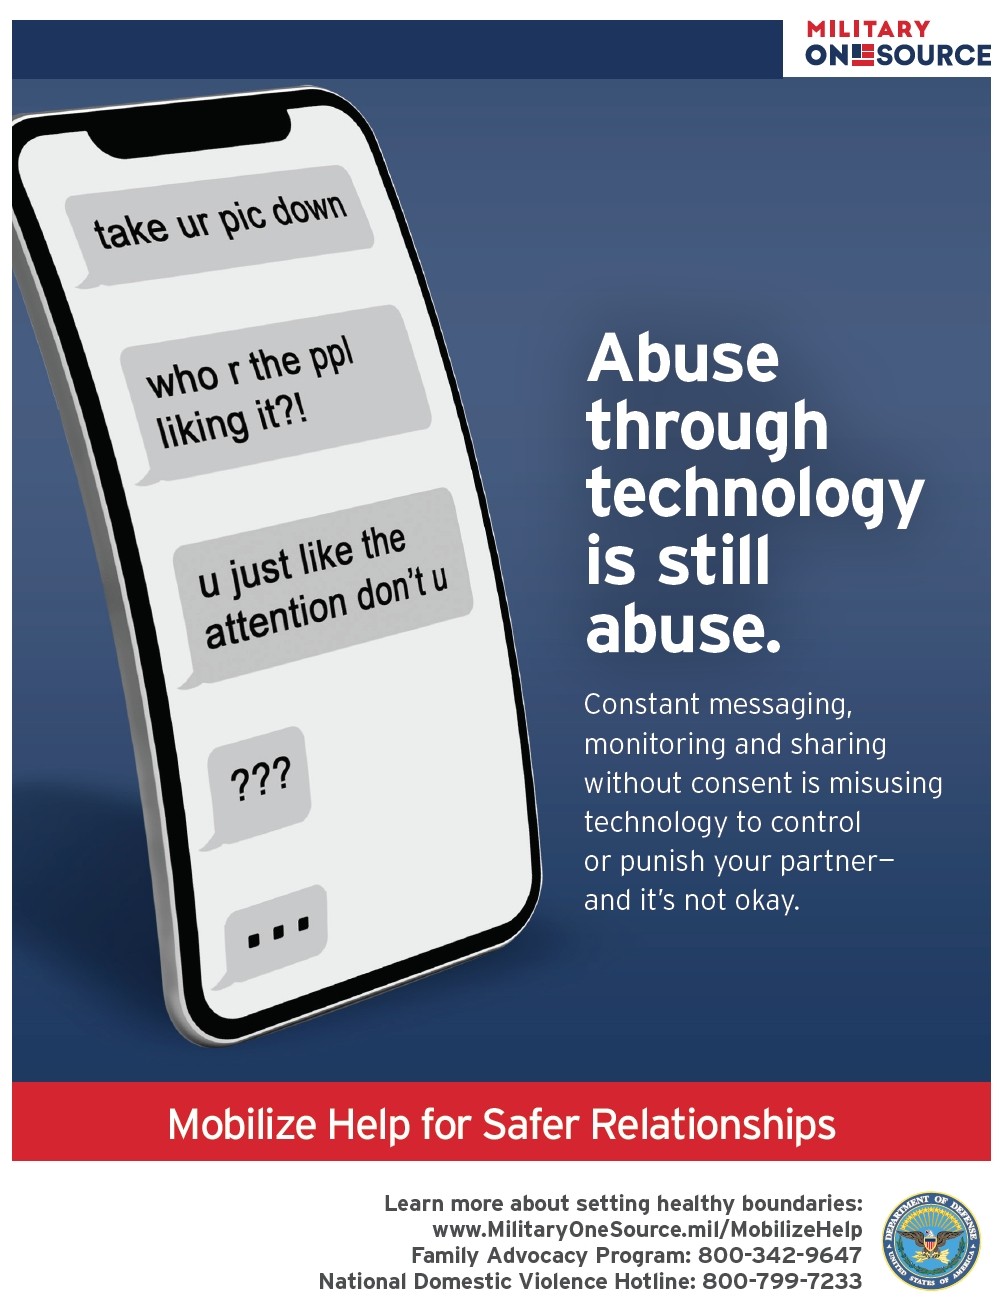 Ce este abuzul tehnologic?